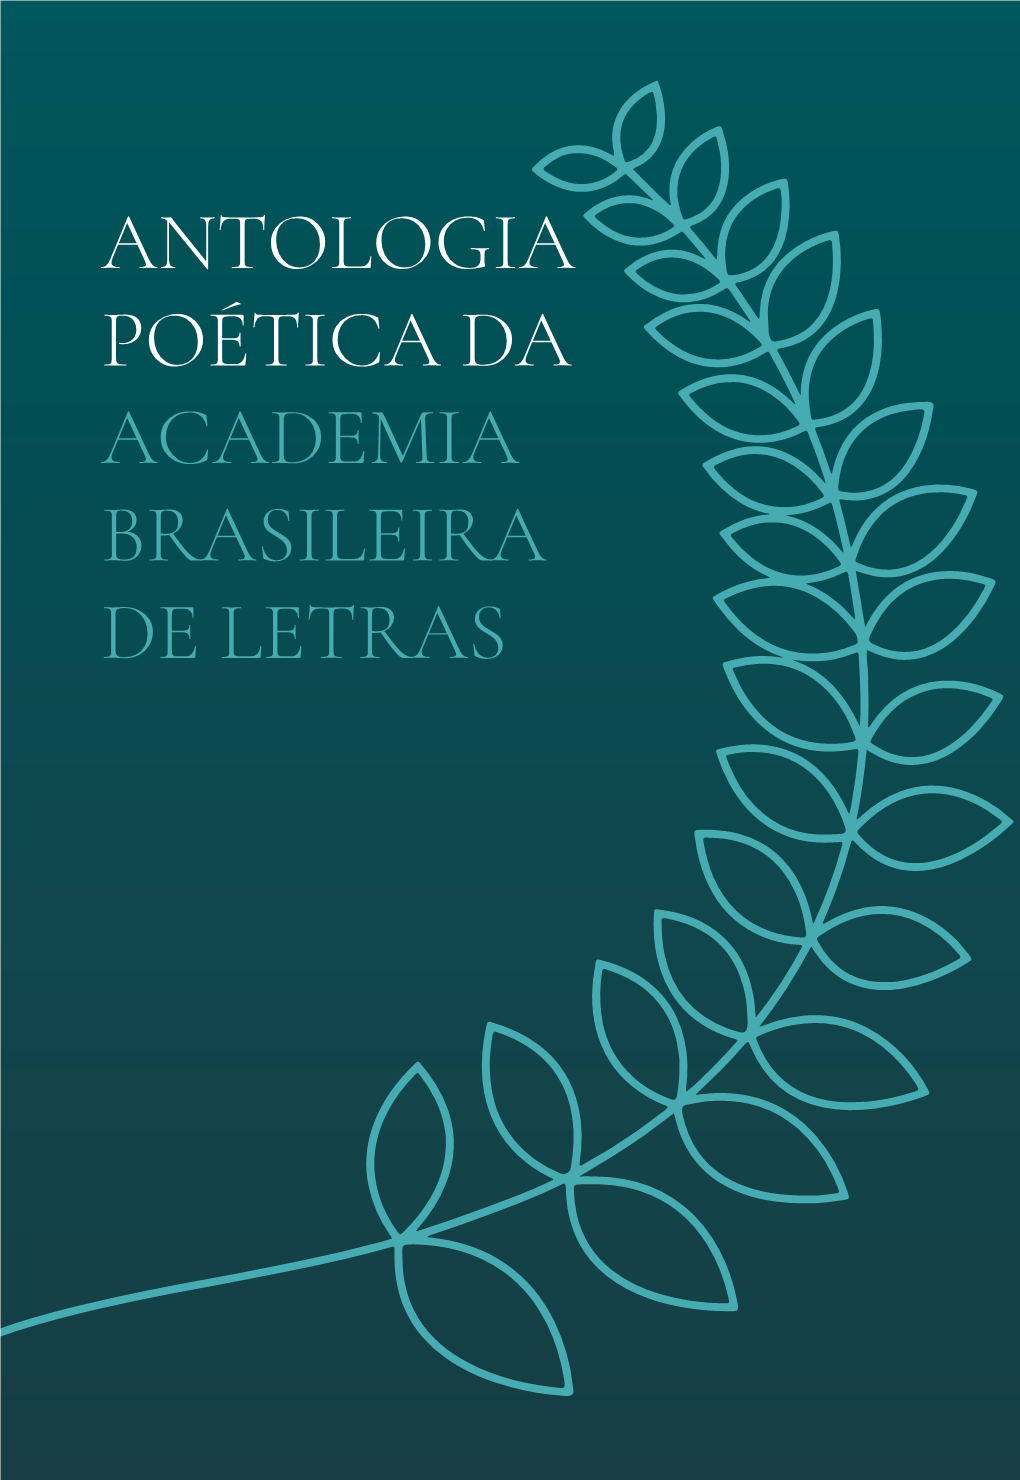 ANTOLOGIA POÉTICA DA ACADEMIA BRASILEIRA DE LETRAS Câmara Dos Deputados Academia Brasileira De Letras 56ª Legislatura | 2019-2023 Diretoria